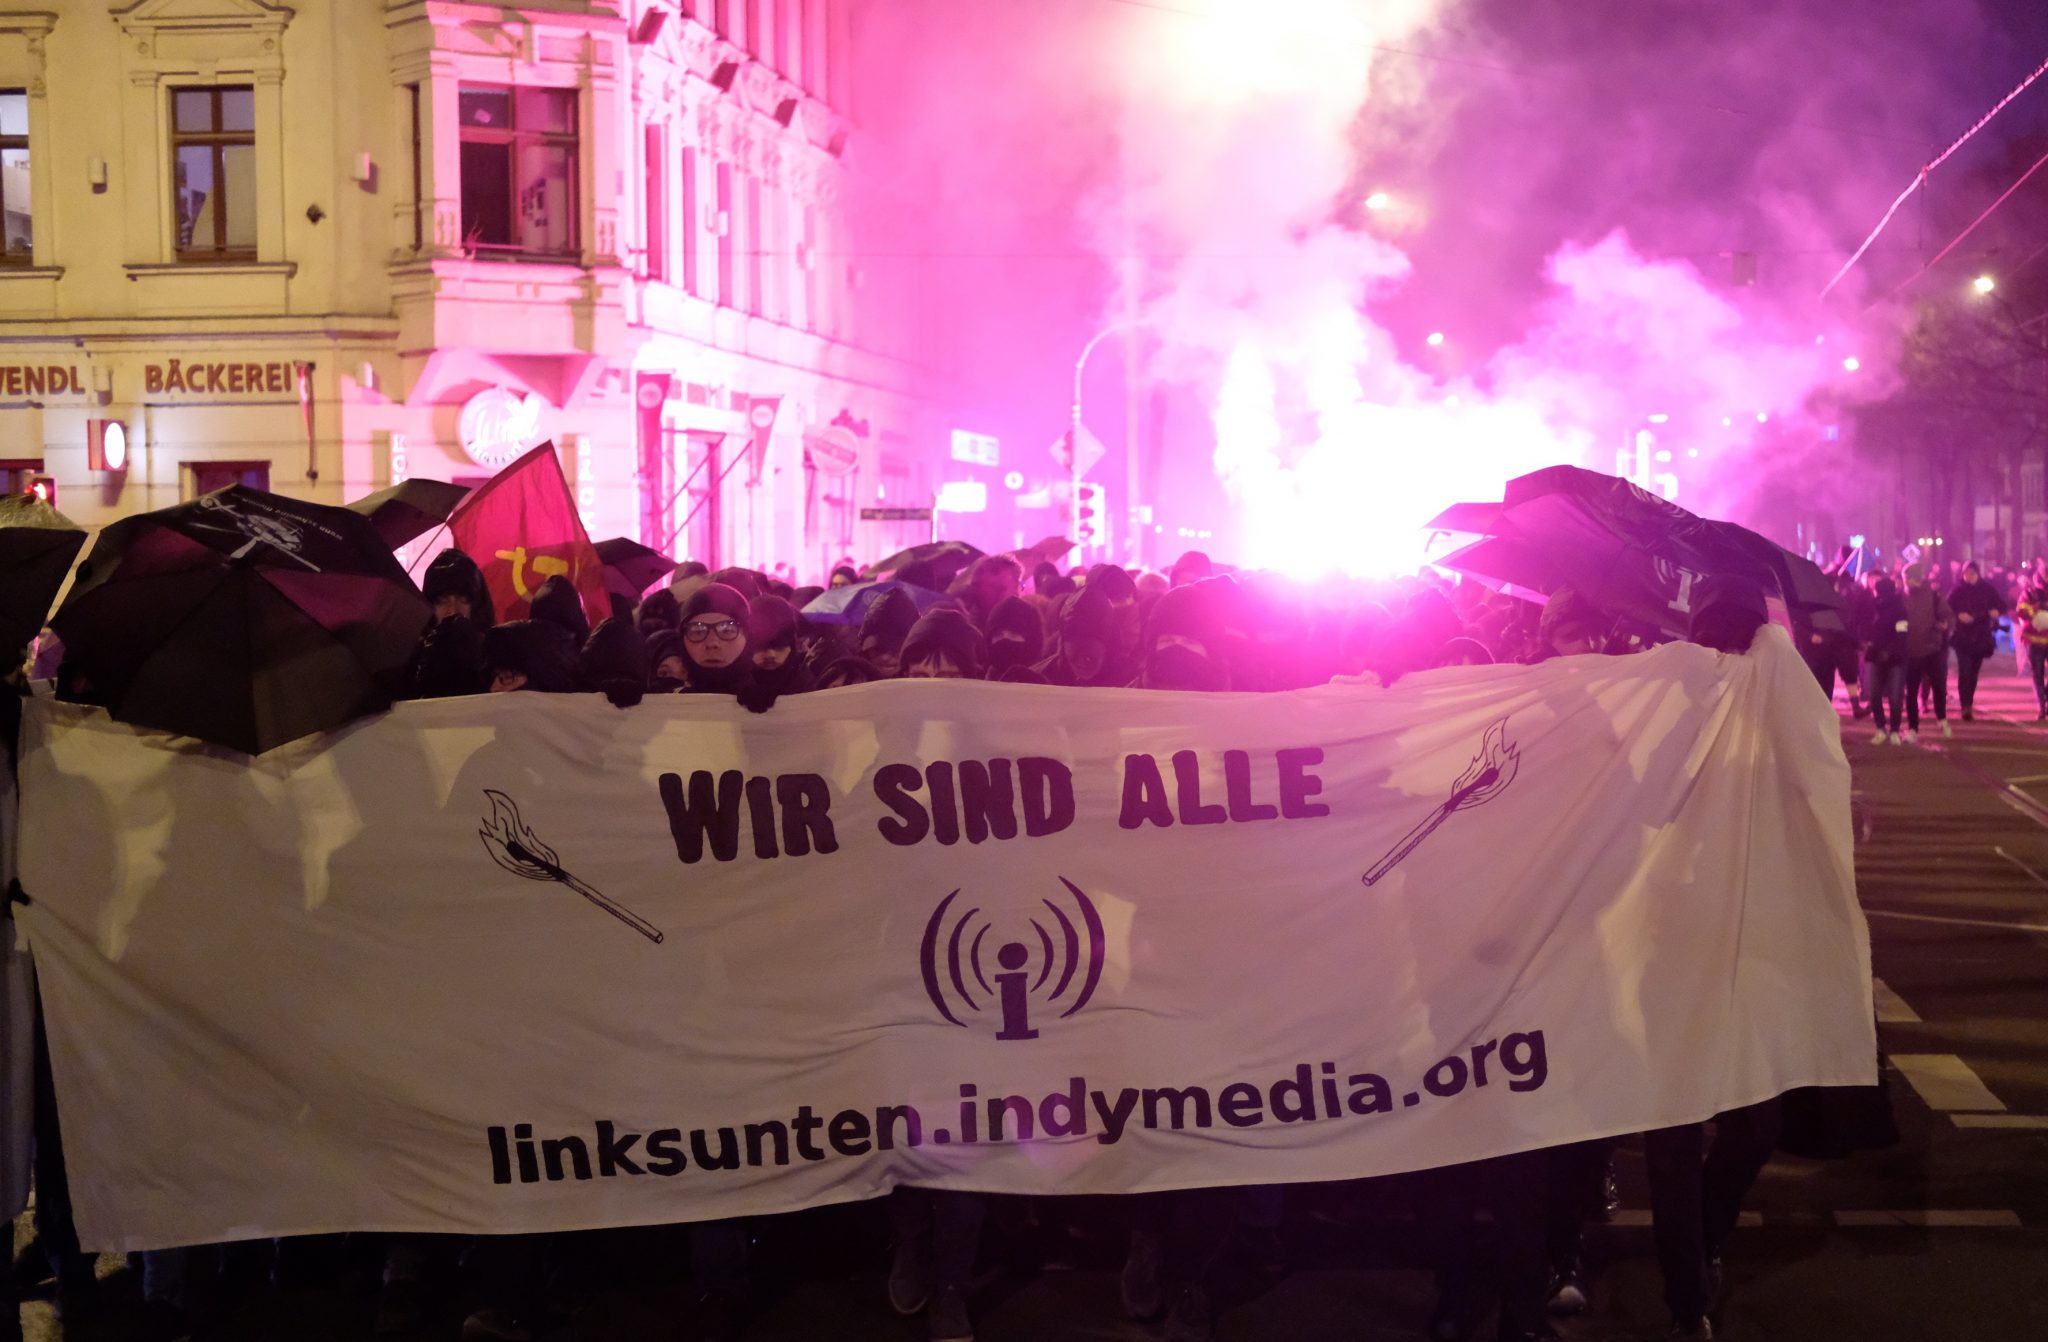 Teilnehmer einer Demonstration in Leipzig protestieren gegen ein Verbot der linksradikalen Plattform Indymedia